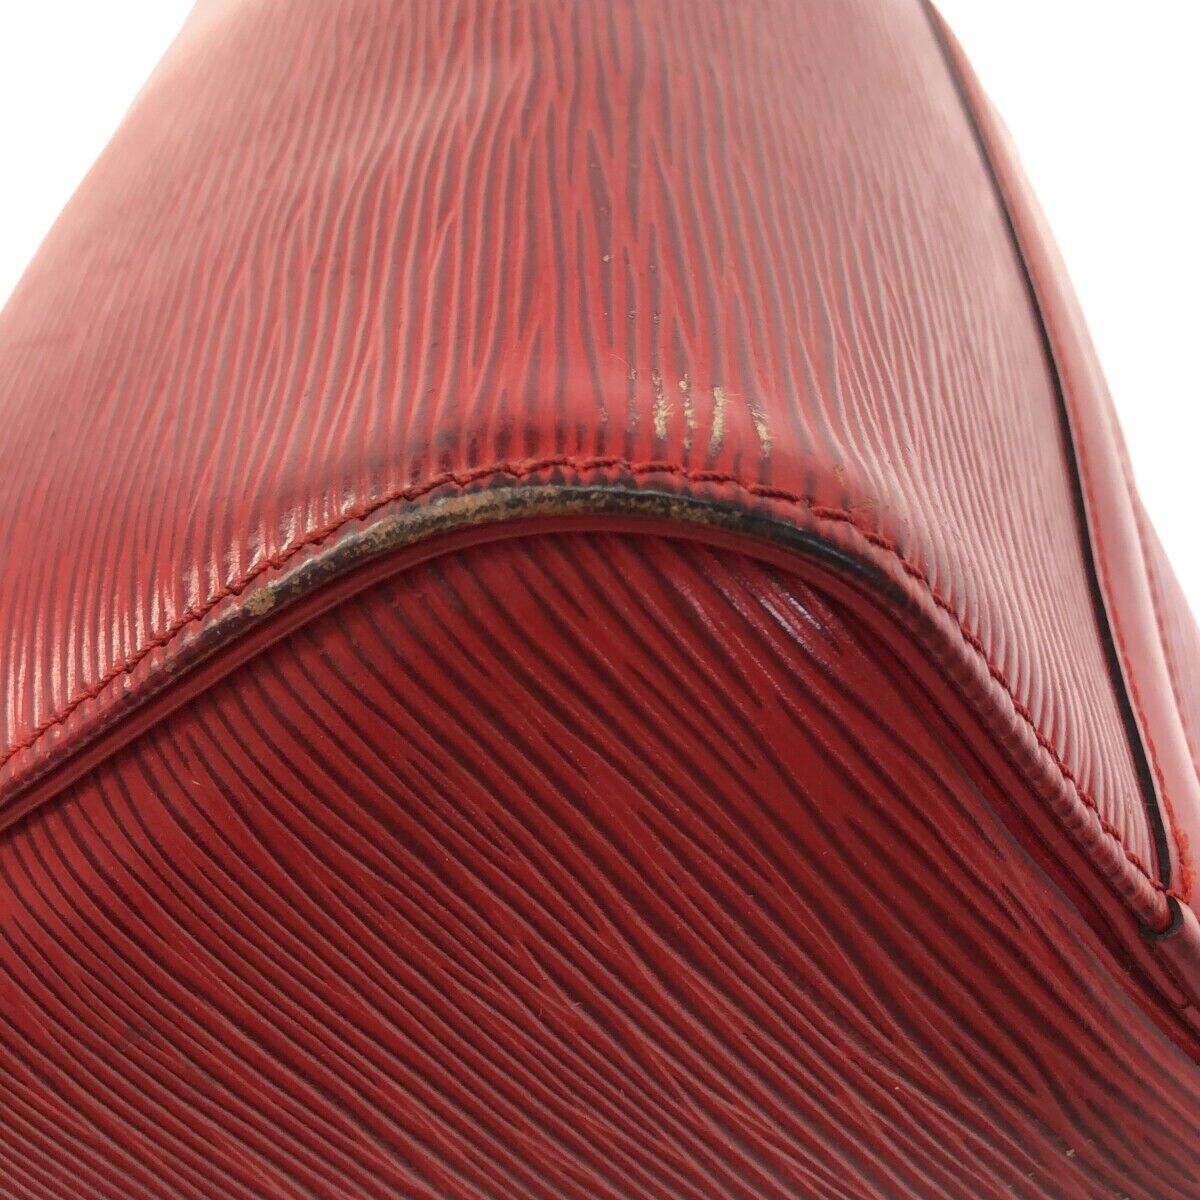 Louis Vuitton - Epi Leather Speedy 35 Handbag in Netherlands